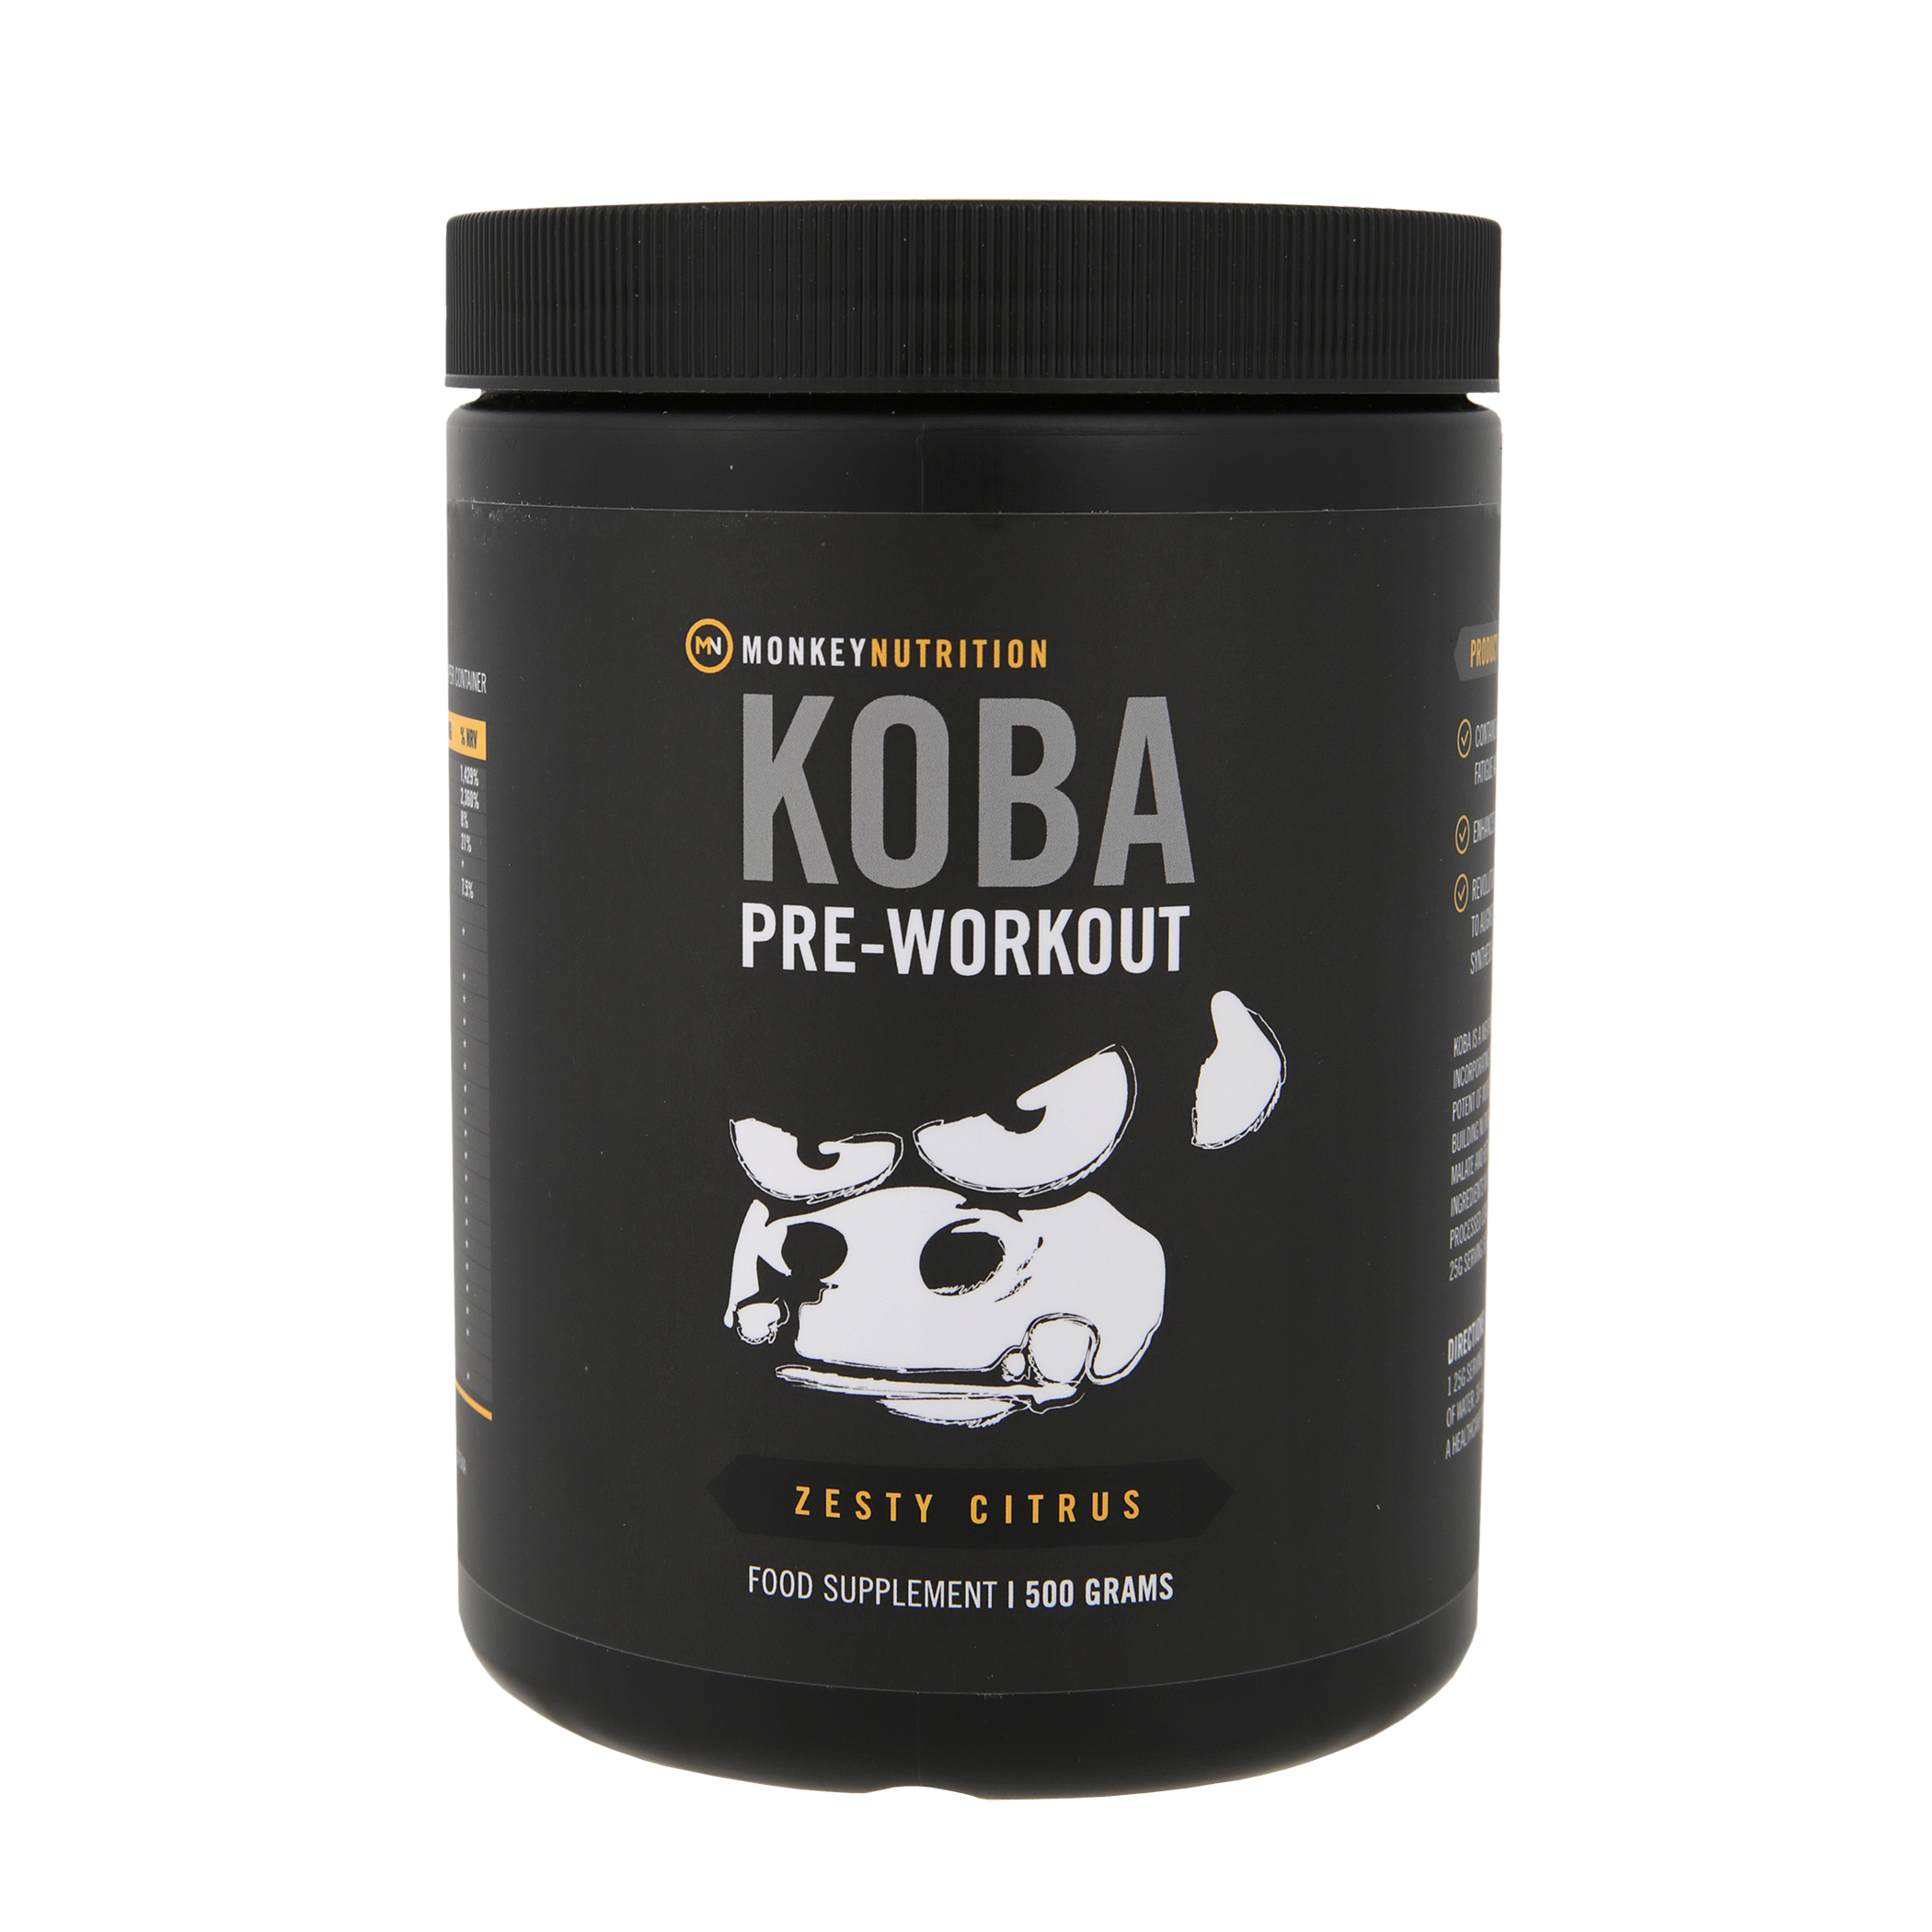 KOBA - Pre-Workout Powder